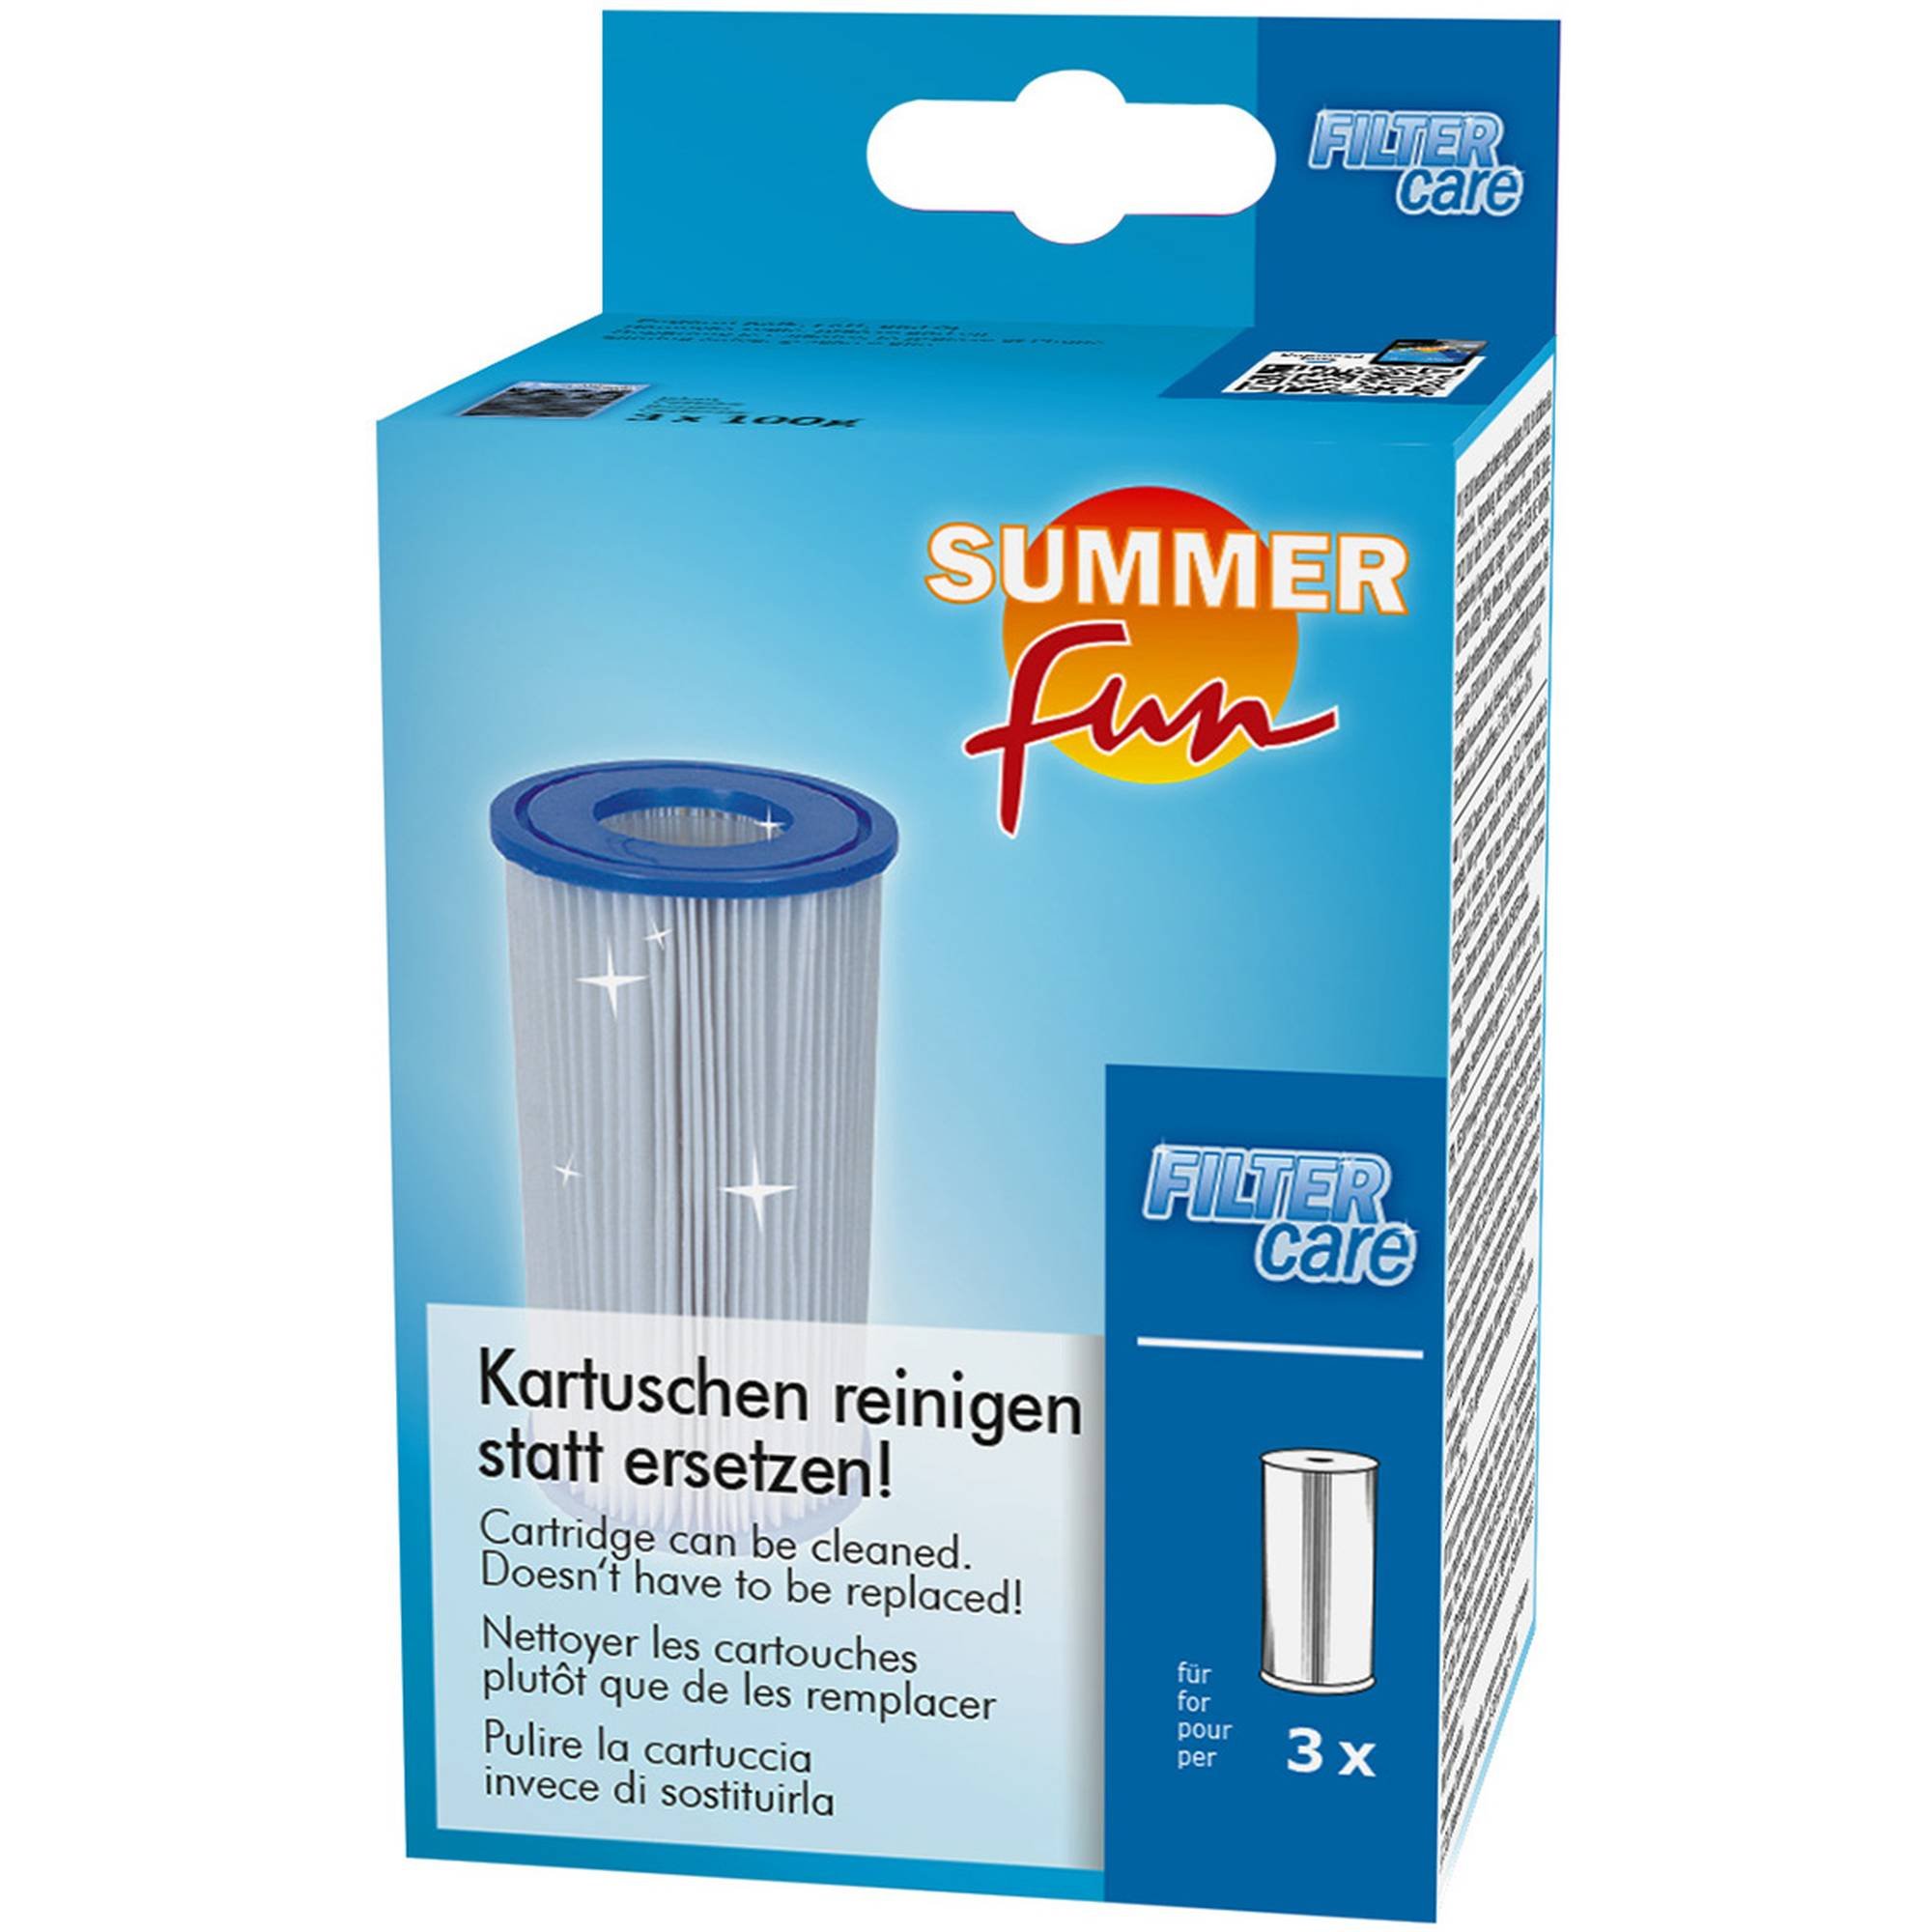 Summer Fun - Filter Care - 3x 100g Entkalkt und Reinigt Filterkartuschen von Fett und Öl, 0,3 kg